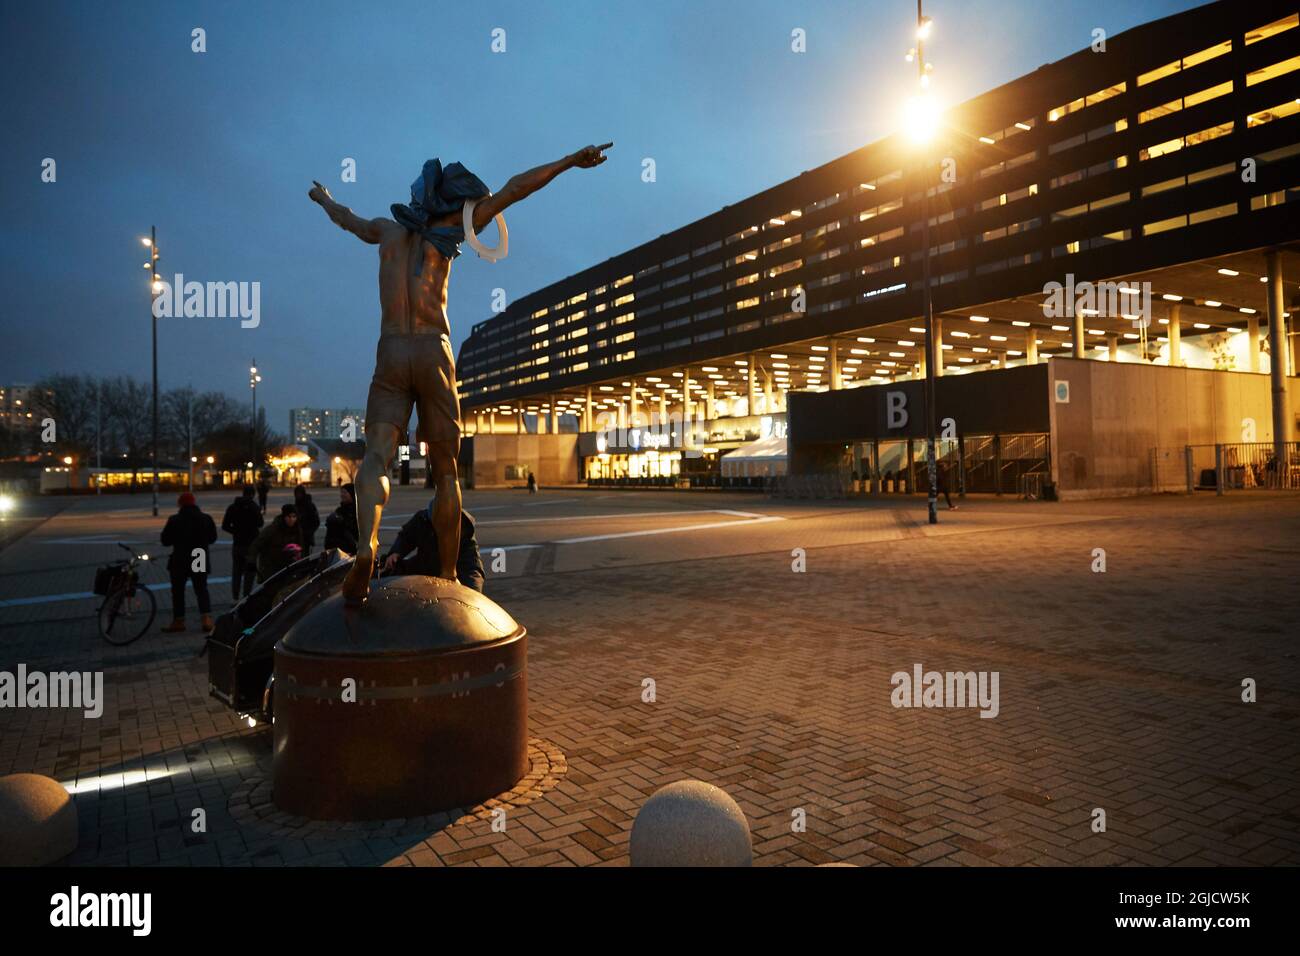 La statua del calciatore svedese Zlatan Ibrahimovic fuori dallo stadio di calcio di Malmo, in Svezia, è stata vandalizzata. Alcuni sostenitori di Zlatans vecchia squadra di calcio Malmo FF sono arrabbiati come Zlatan è diventato uno dei proprietari della squadra di calcio di Stoccolma Hammarby FF Foto: Andreas Hillergren / TT / kod 10600 Foto Stock